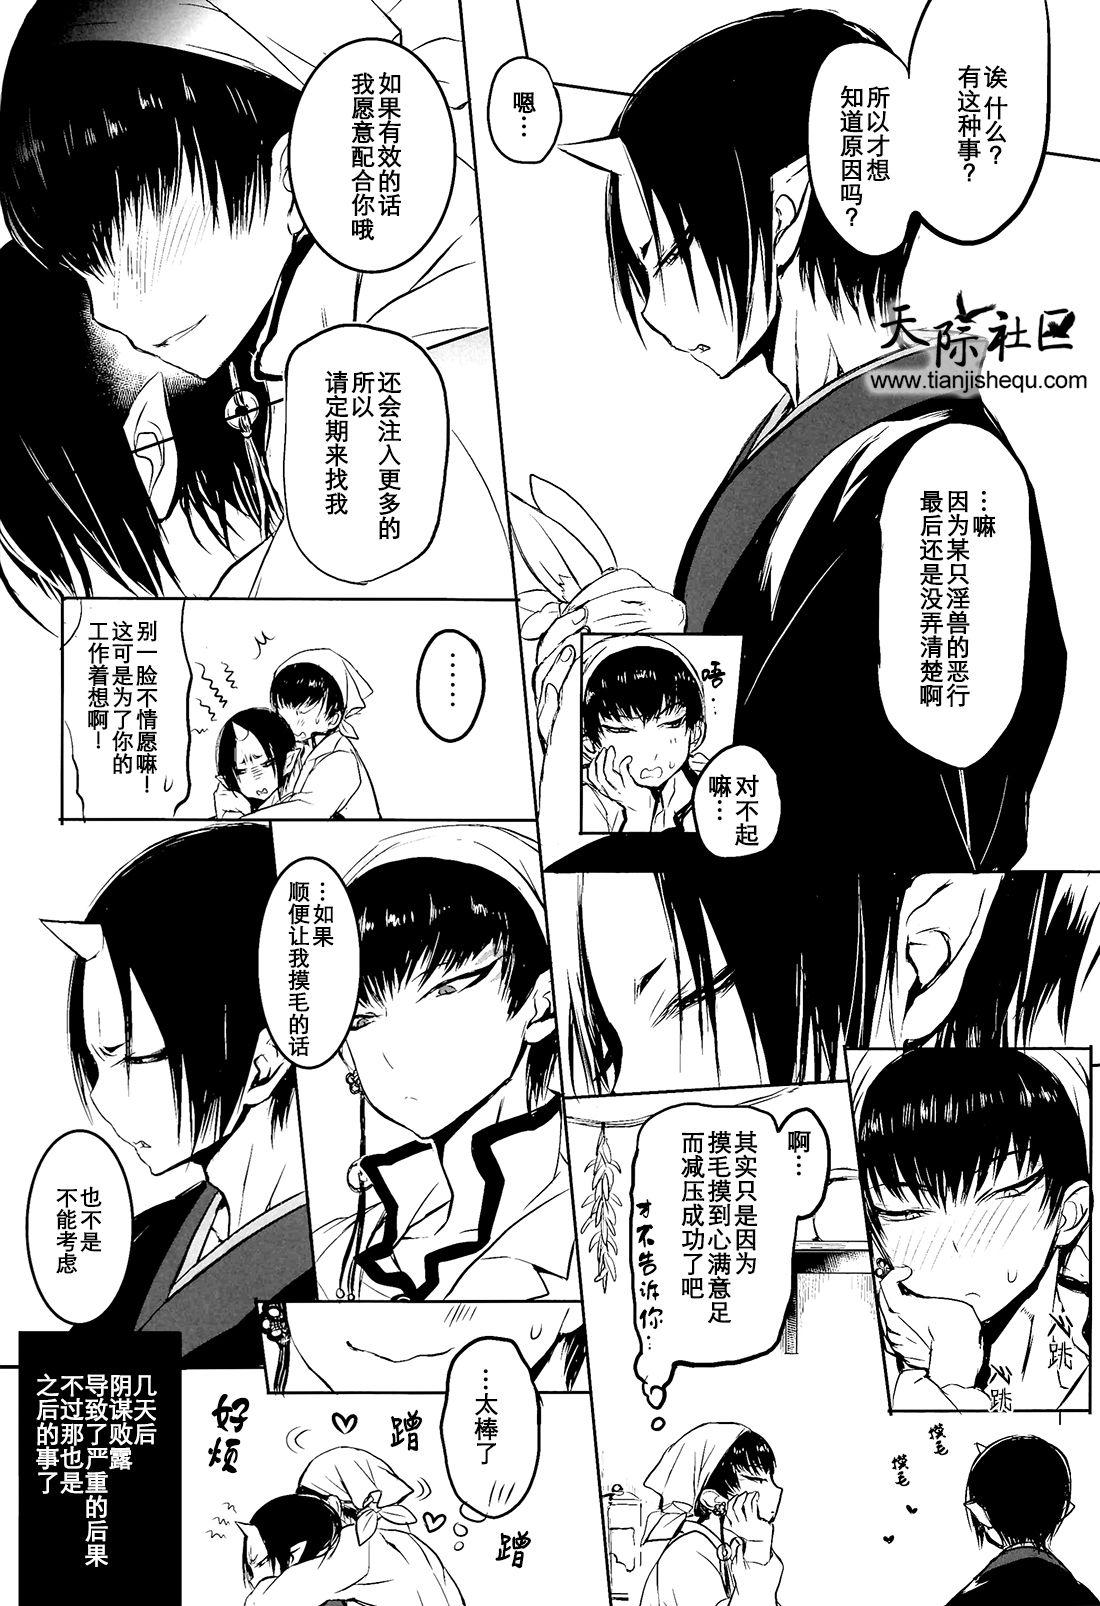 Casado Kami-sama no Matatabi - Hoozuki no reitetsu Bubble - Page 26